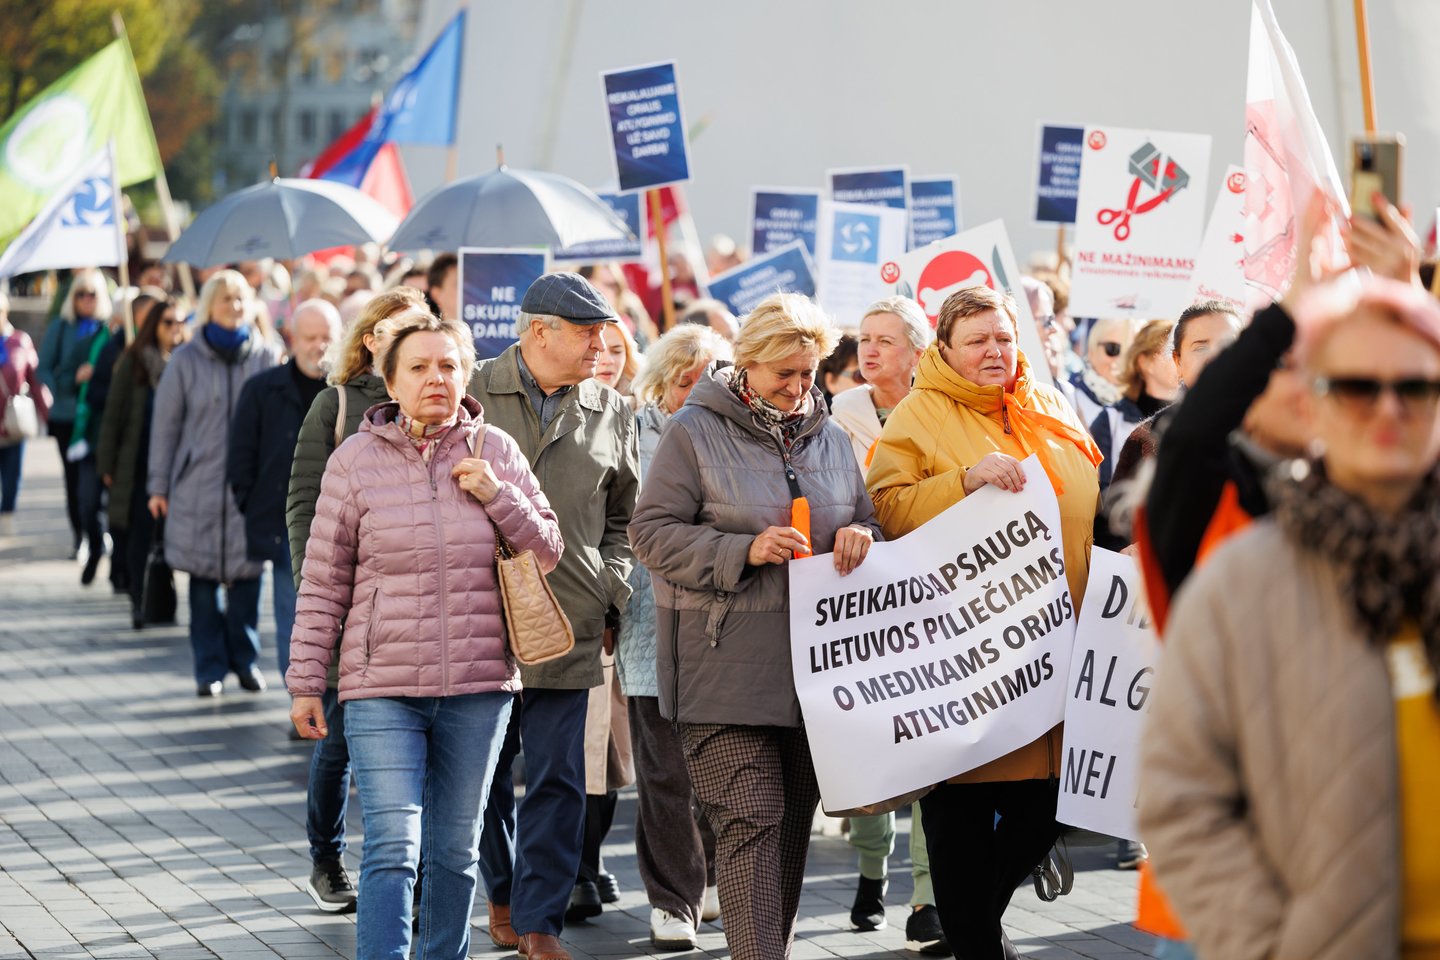 Penktadienį, išreiškiant solidarumą su protestuojančiomis Europos profsąjungomis ir prieštaraujant griežto taupymo politikai, vyksta trijų profsąjungų organizuojama eisena nuo Katedros aikštės iki Seimo, kur planuojamas mitingas.<br>T.Bauro nuotr.